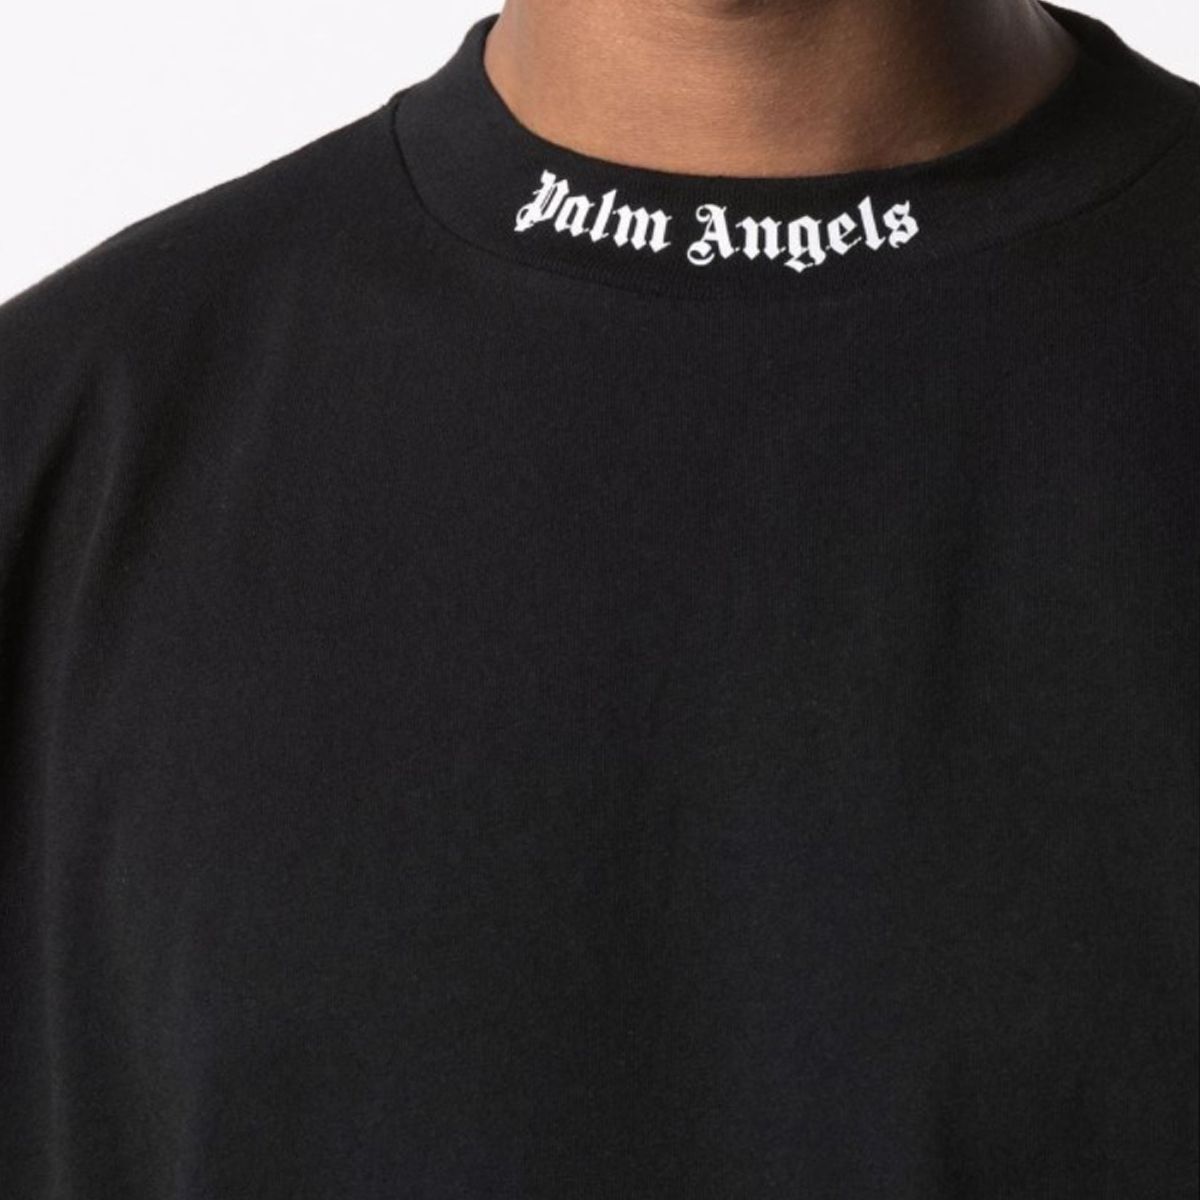 Logo-Print Short-Sleeve T-Shirt Black